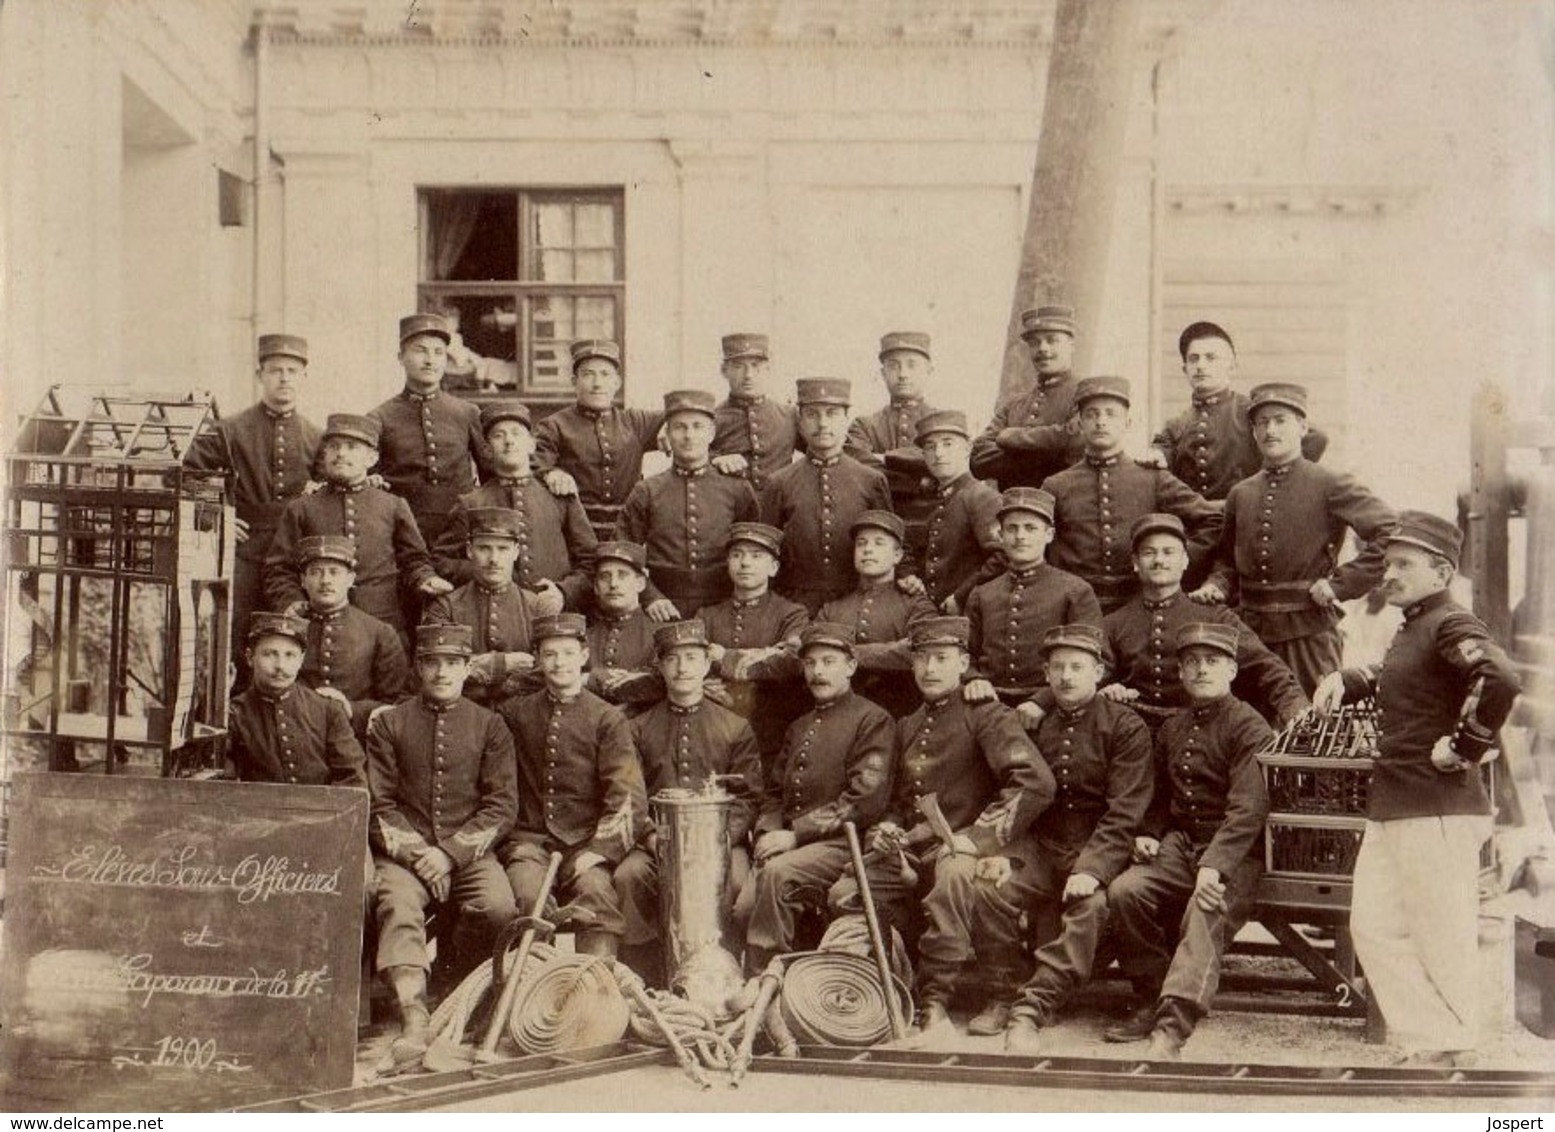 PRCP, , Les Sapeurs-Pompiers De Paris / Elèves Sous-officiers,  Brandweer, Photo Of Old Postcard, 2 Scans - Berufe